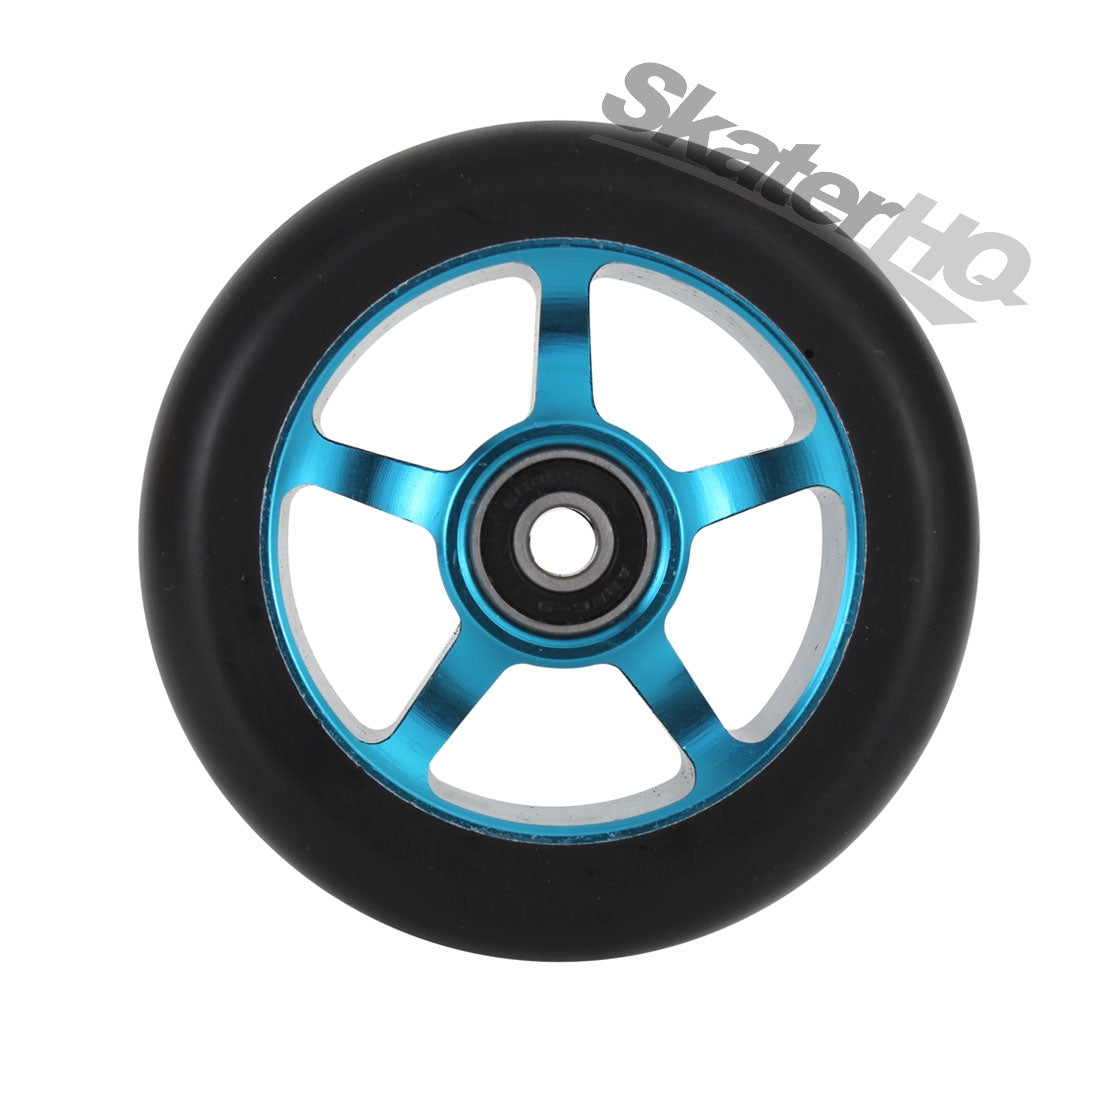 Metal Core 100mm 5 Spoke Wheel - Black/Teal Scooter Wheels